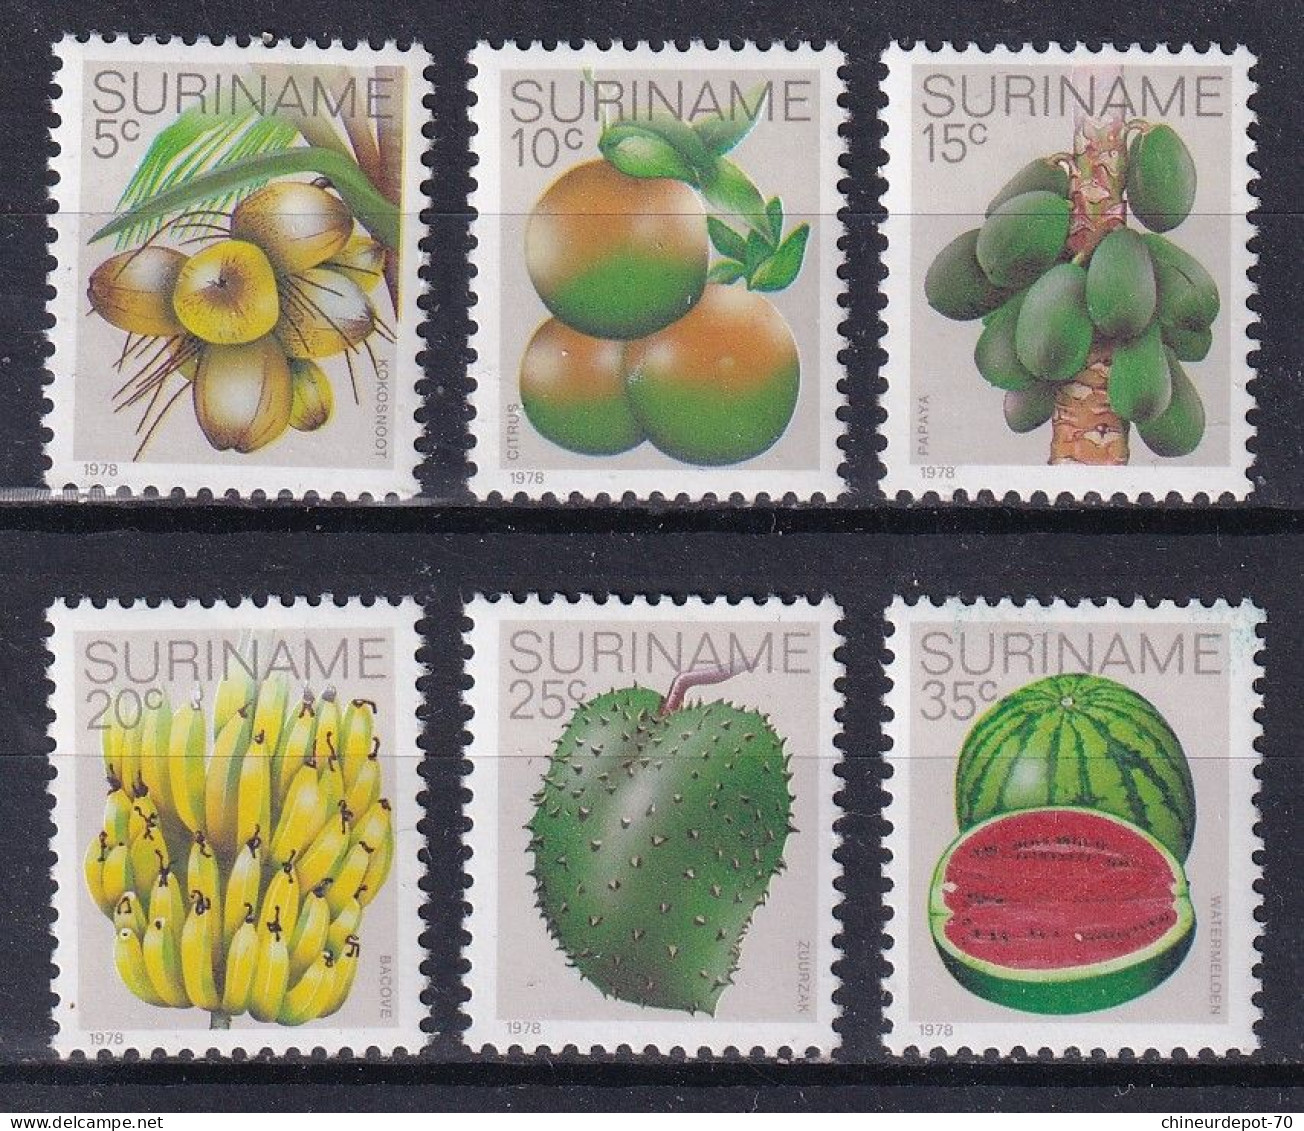 Suriname Surinam Neufs Sans Charnière ** 1978 Fruits Pasteque Bananes Citron ** - Suriname